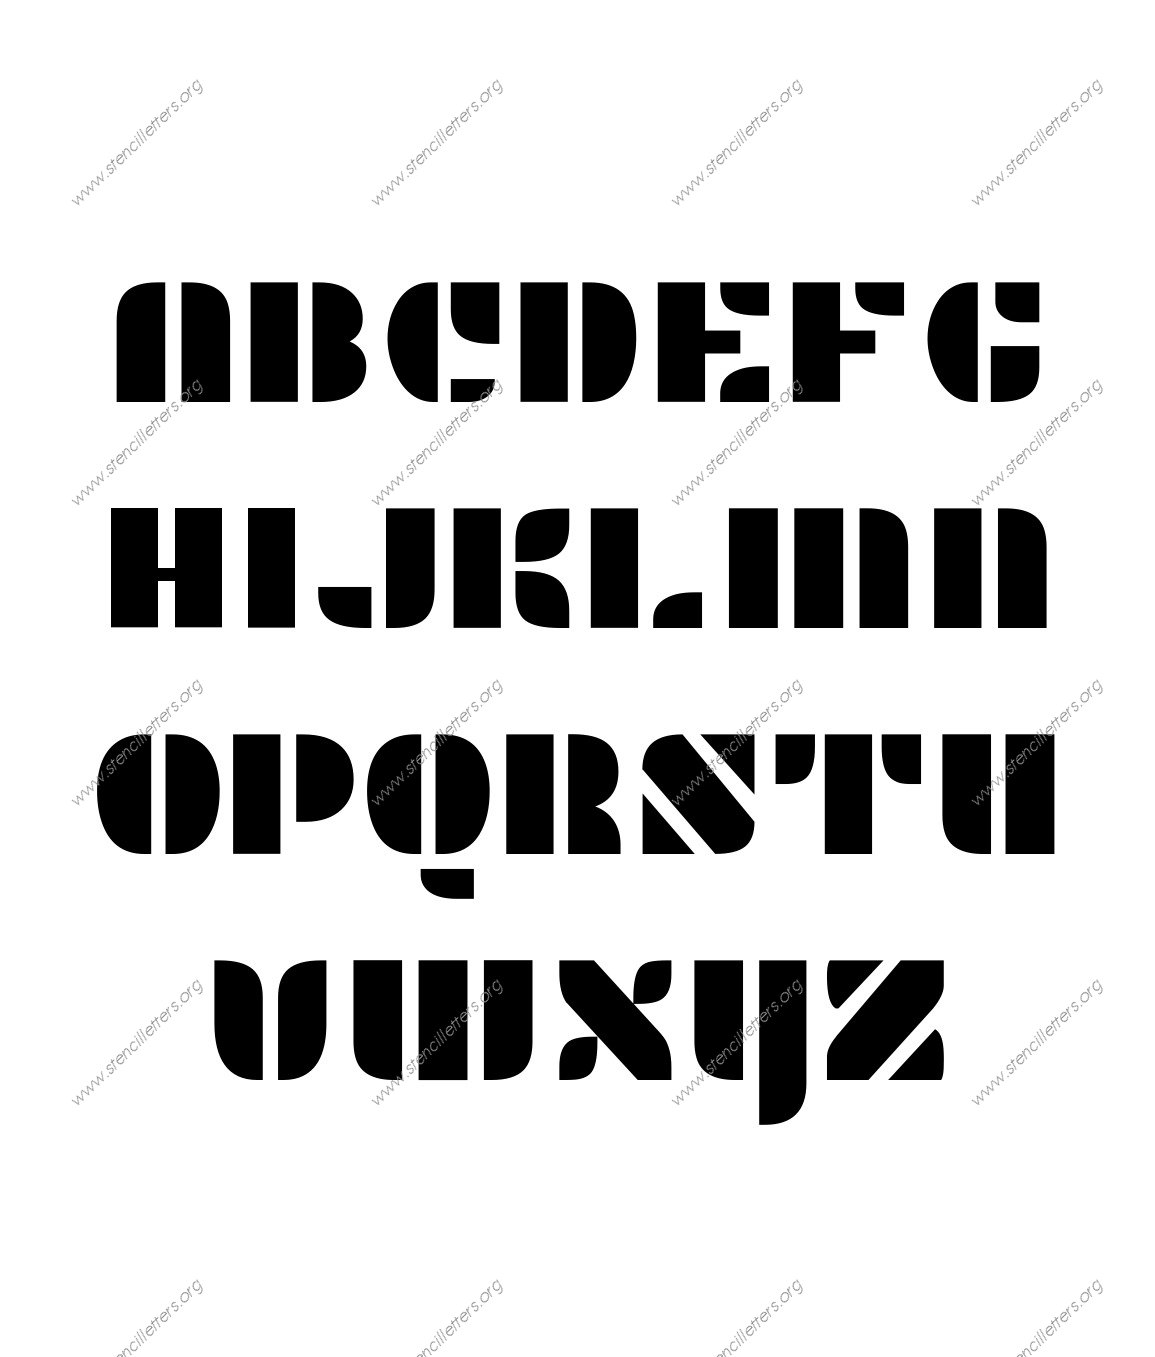 Display Decorative A to Z alphabet stencils